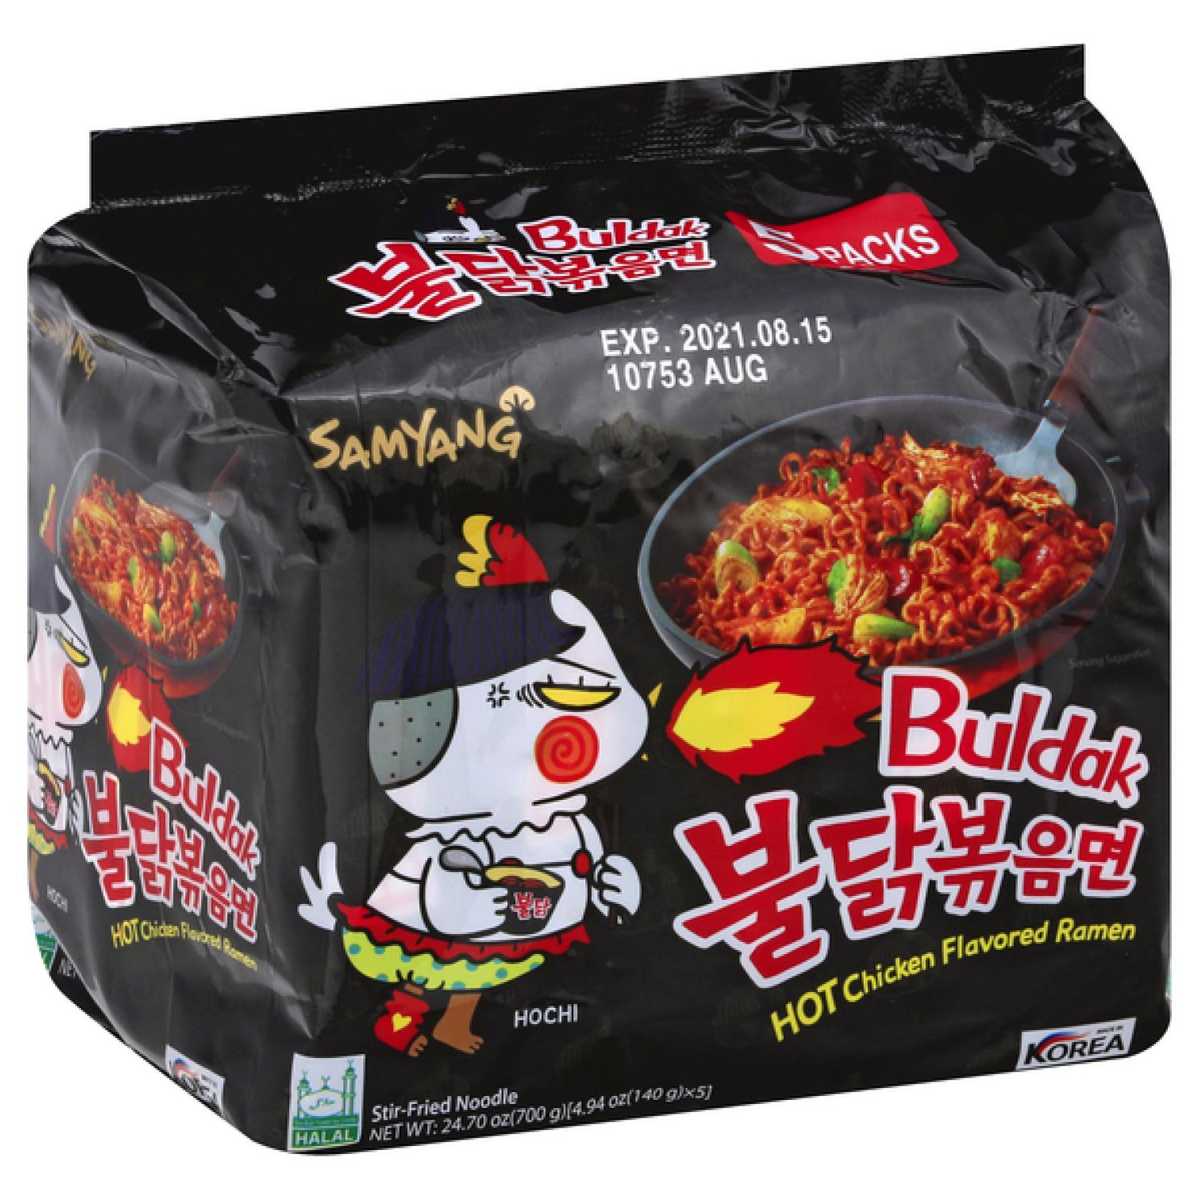 Samyang Buldak Carbonara Hot Chicken Flavor Ramen Noodles 130g Unique -  Price History